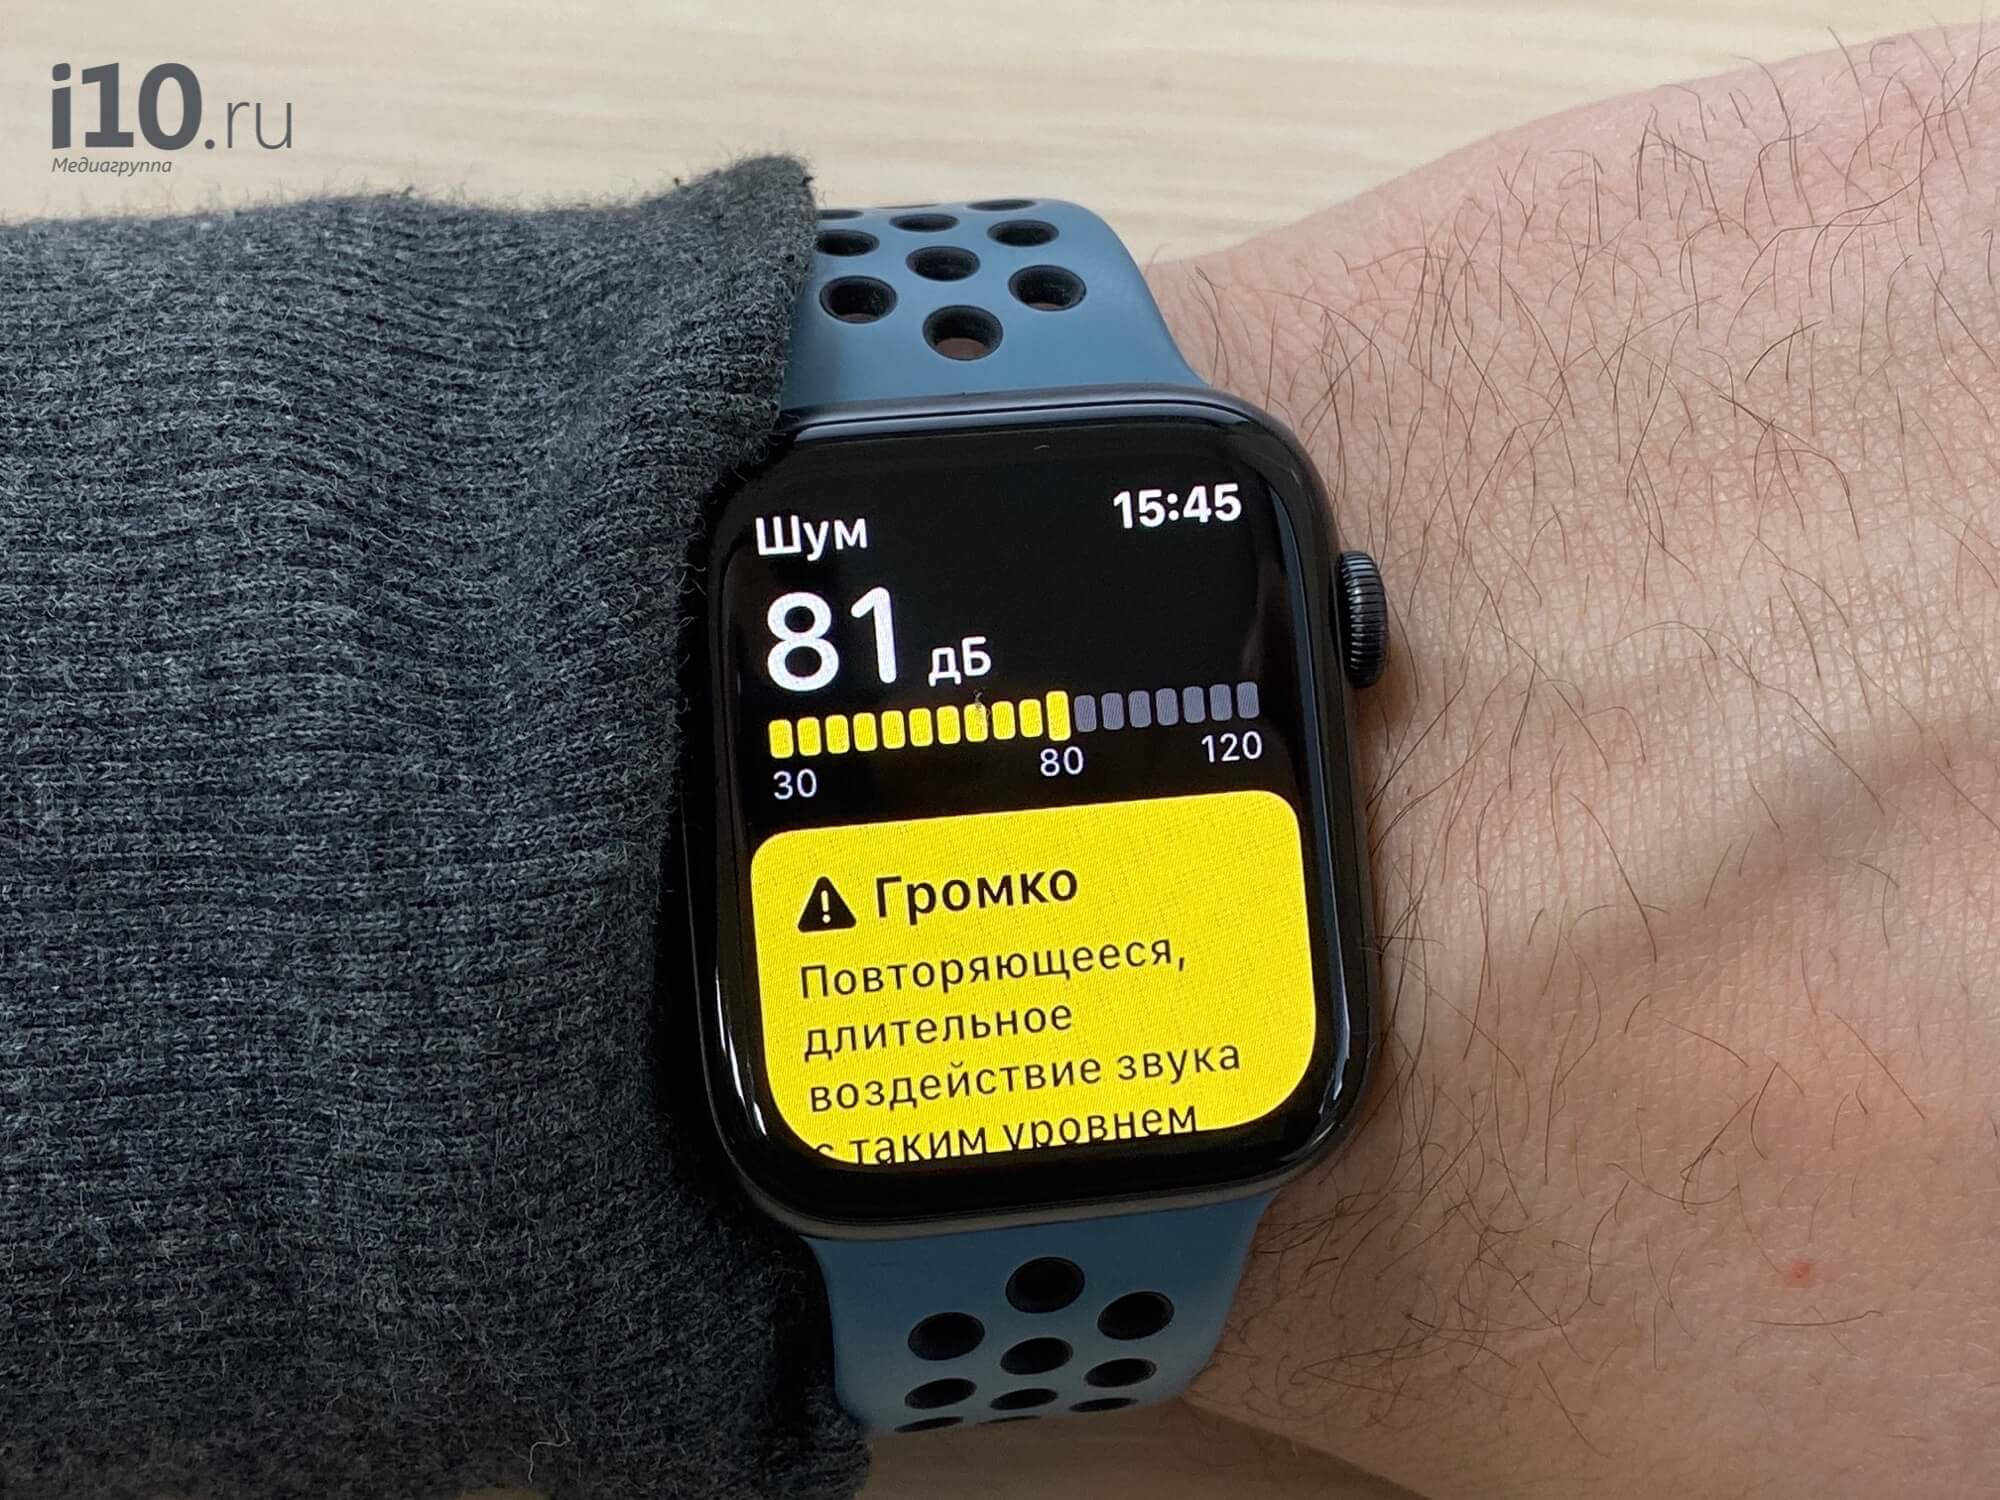 Опыт использования Apple Watch Series 5. Когда вокруг очень шумно, часы скажут об этом. Но такой режим сильно сажает аккумулятор. Фото.